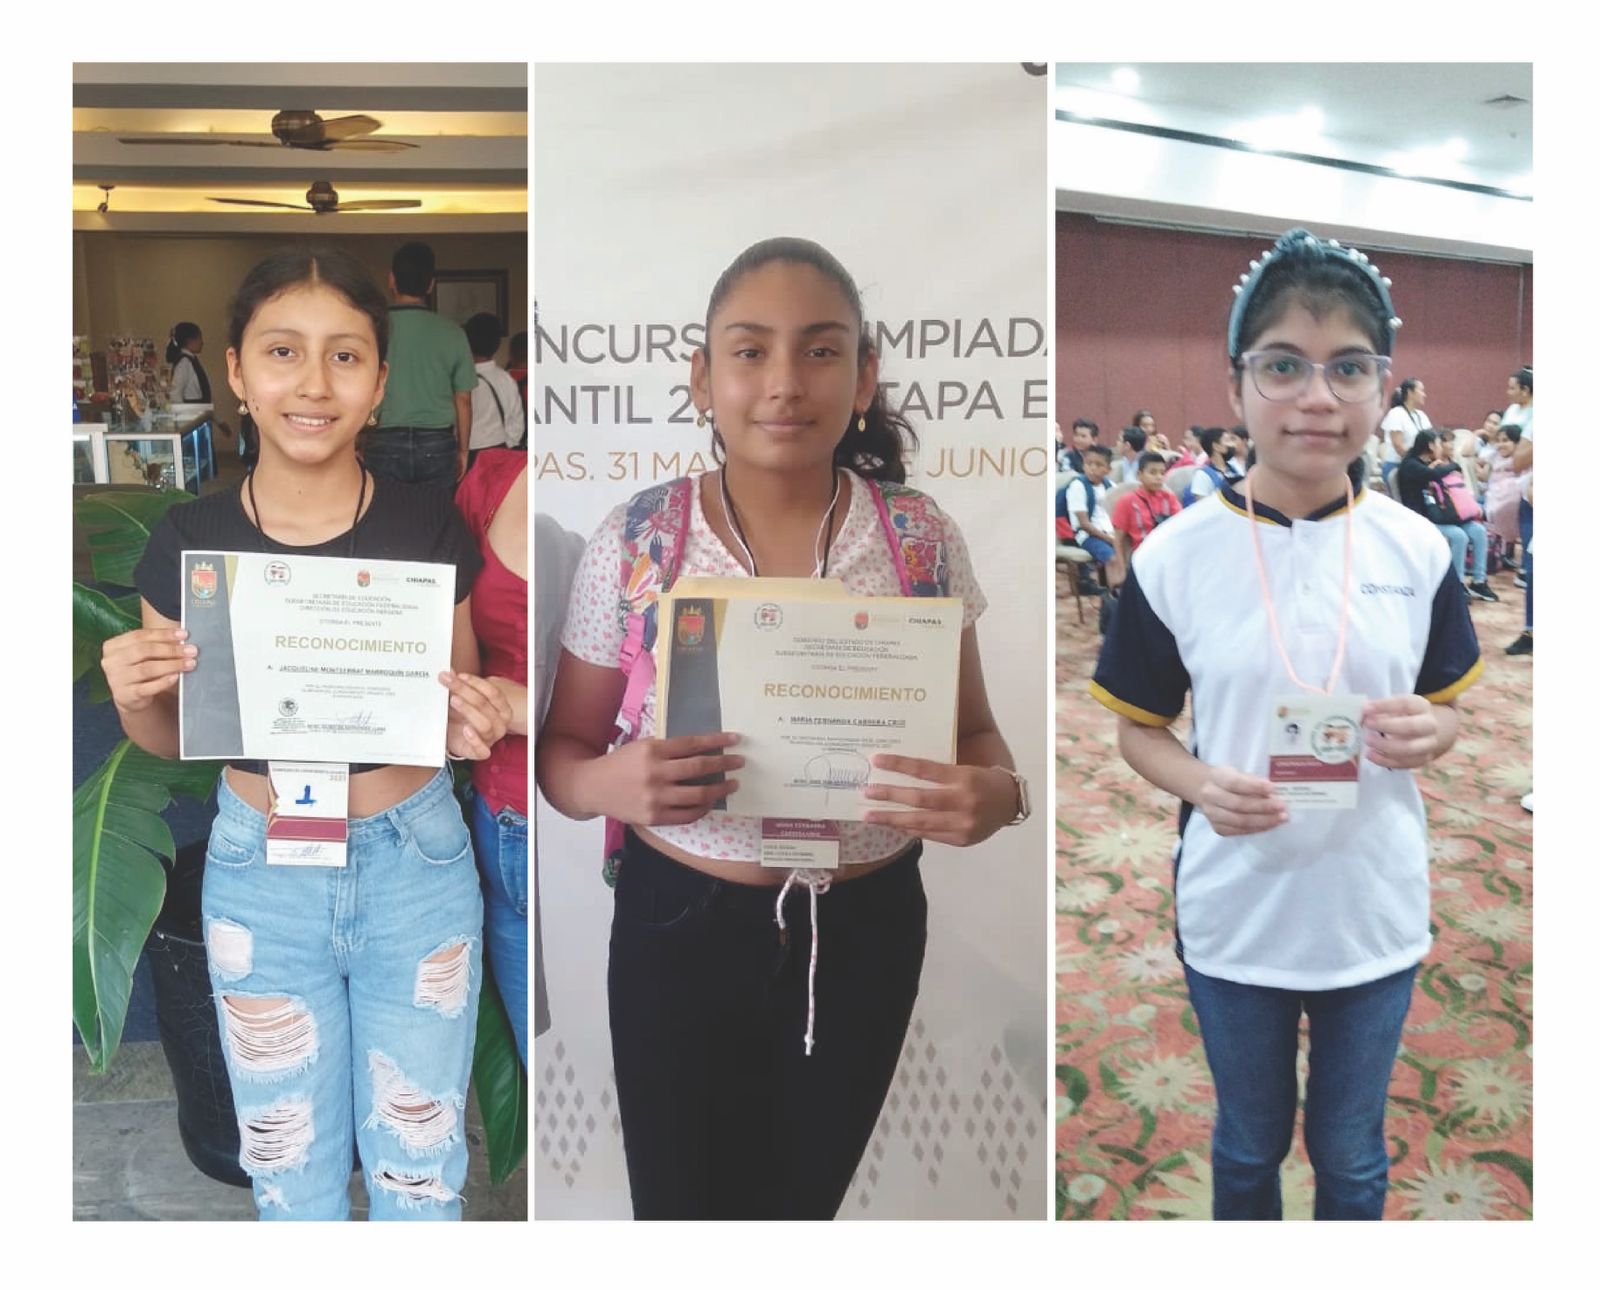 El poder de la educación: unir las realidades de Chiapas